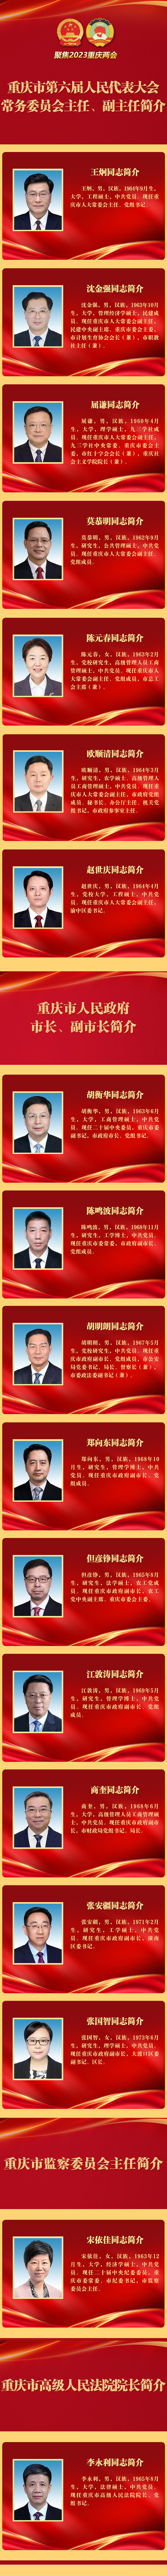 王炯当选重庆市人大常委会主任 胡衡华当选重庆市市长